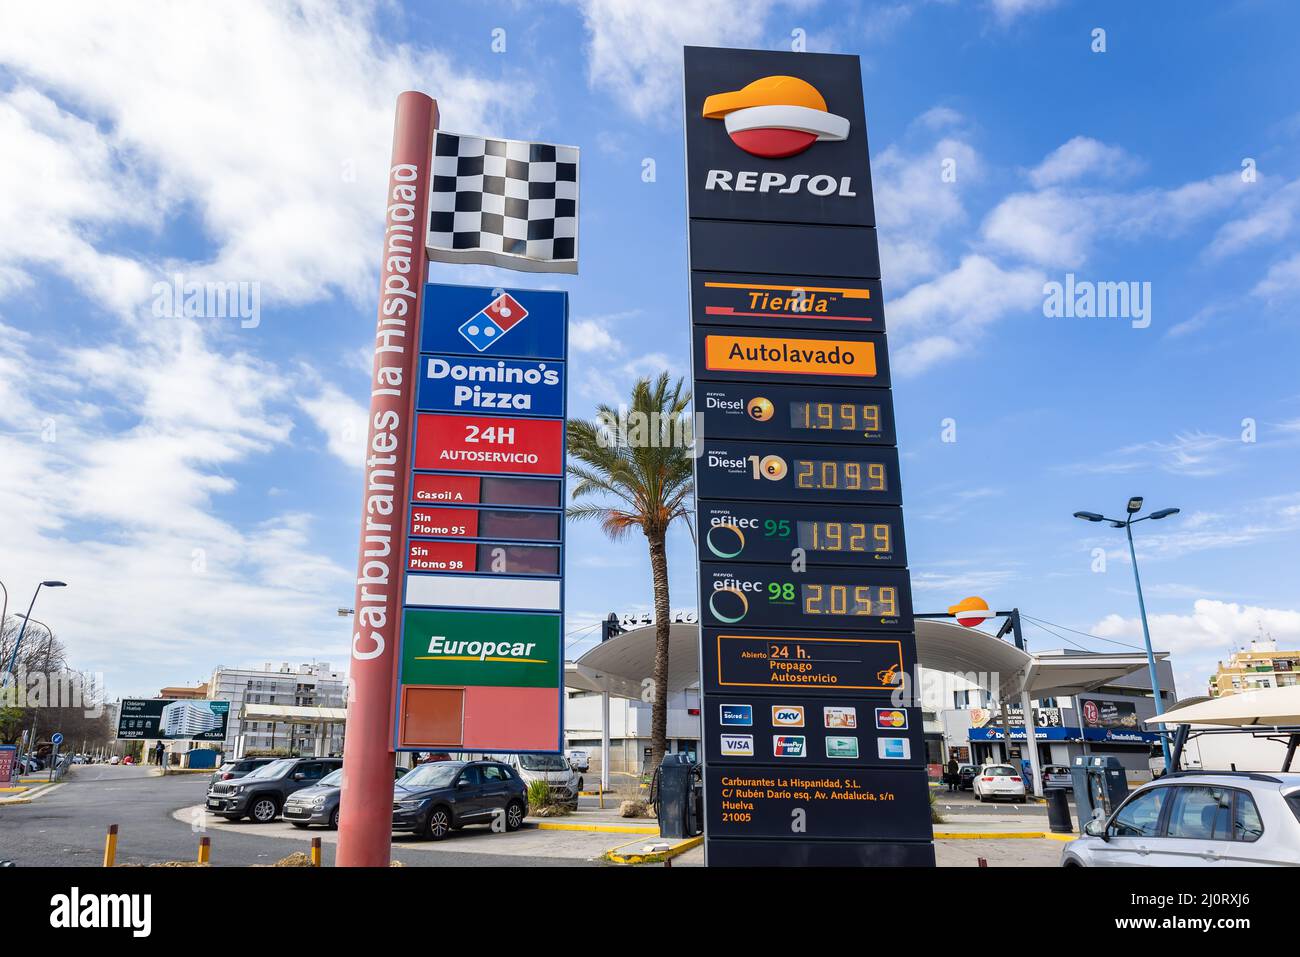 Huelva, España - 6 de marzo de 2022: Exposición con precios de gas, diésel y gasolina sin plomo, en la gasolinera Repsol. Foto de stock